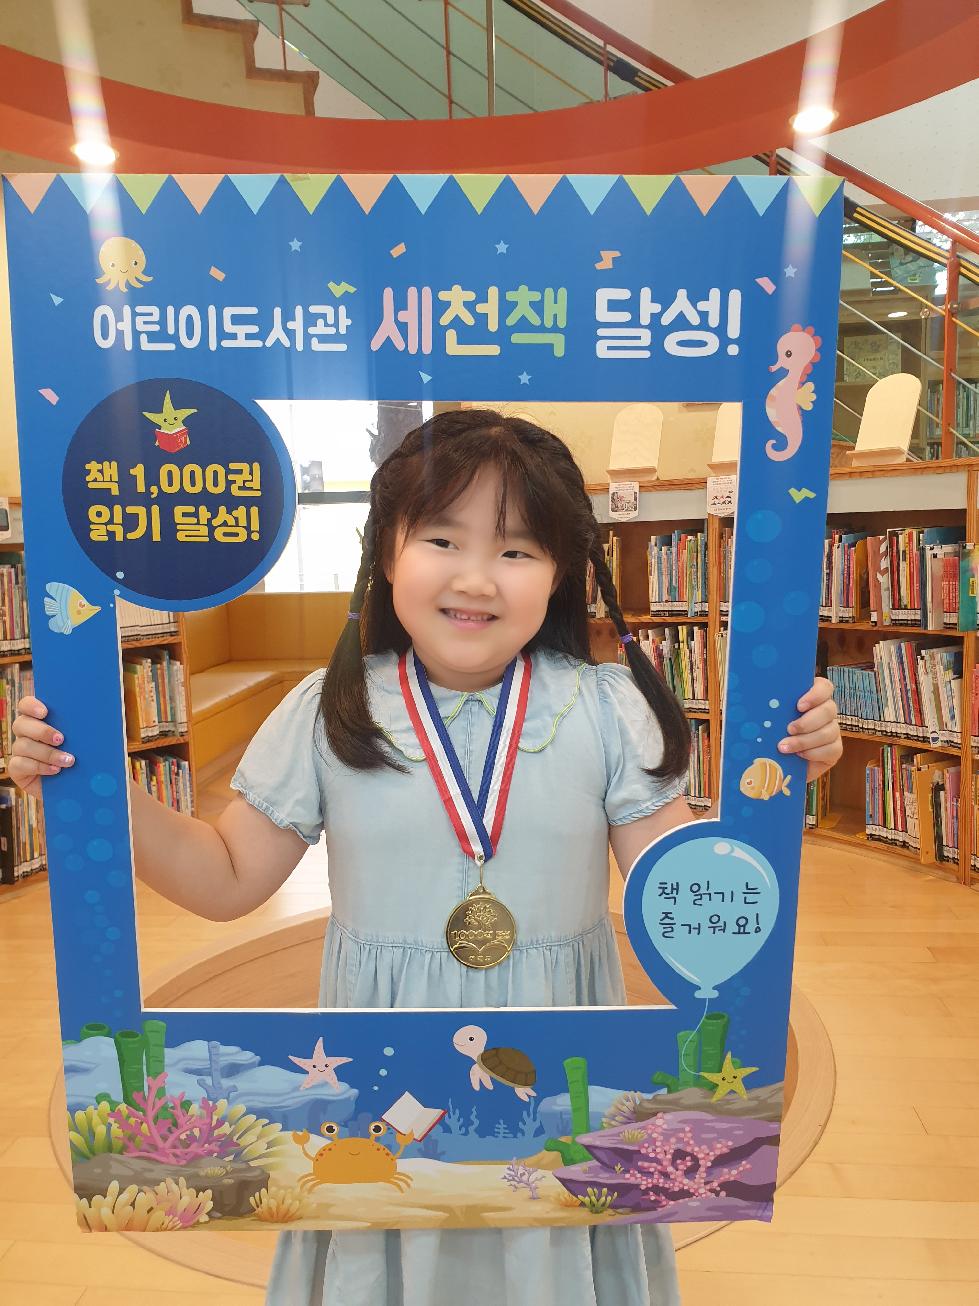 이천시 어린이도서관 세상을 바꿀 천 권의 책 40호 달성 김하린 어린이